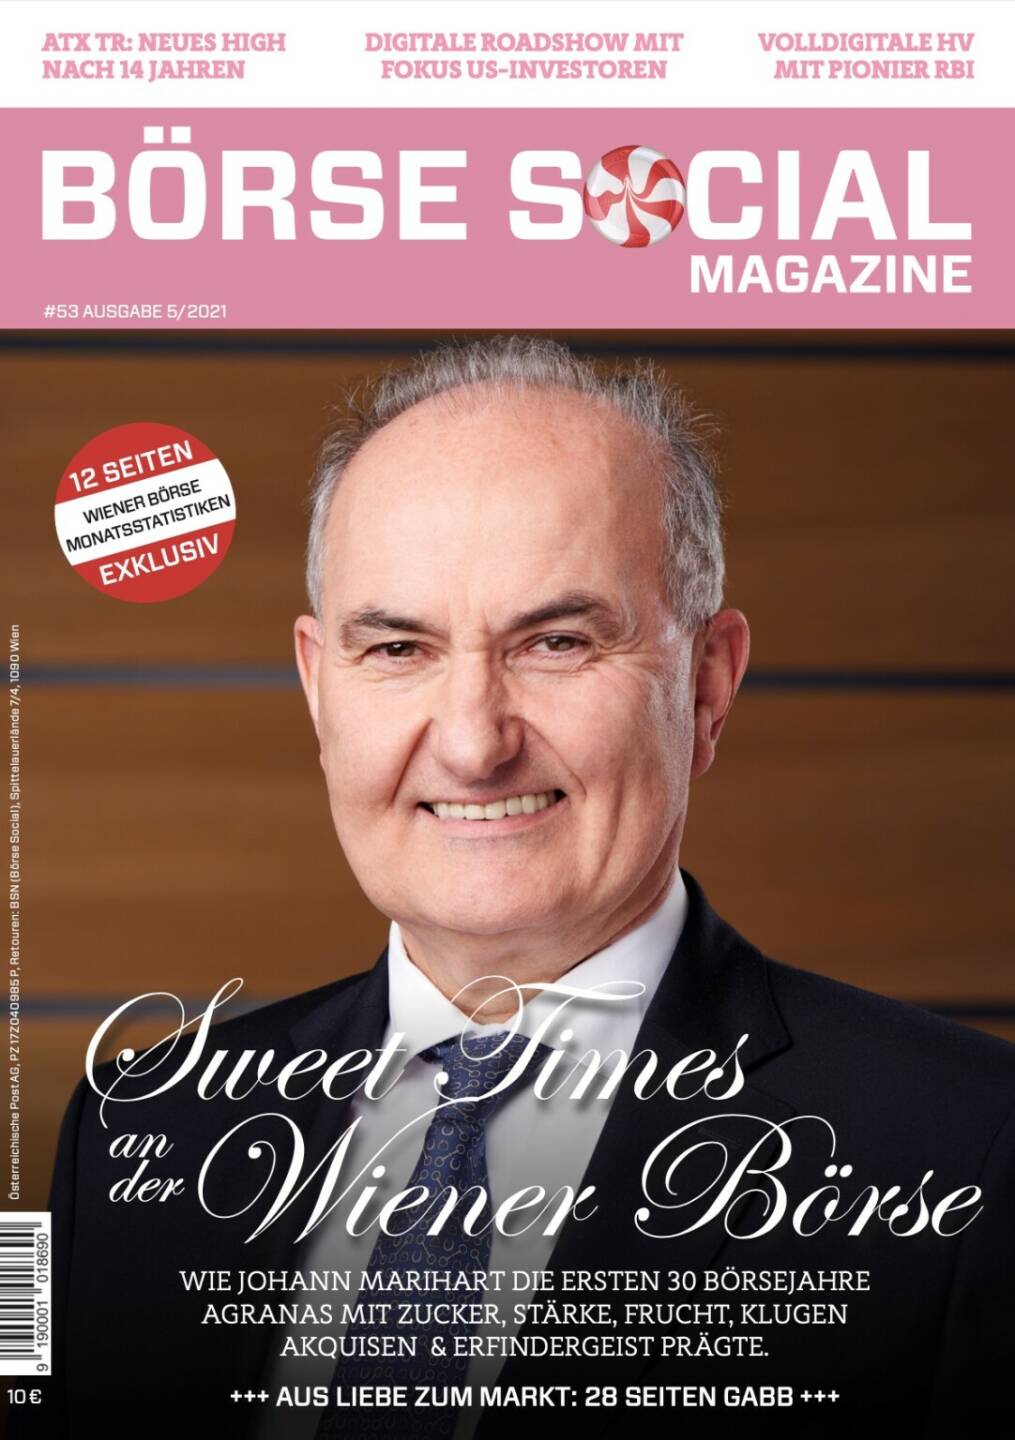 Magazine #53 - Mai 2021: Sweet Times an der Wiener Börse - Wie Johann Marihart die ersten 30 Börsejahre Agranas mit Zucker, Stärke, Frucht, klugen Akquisen  & Erfindergeist prägte.